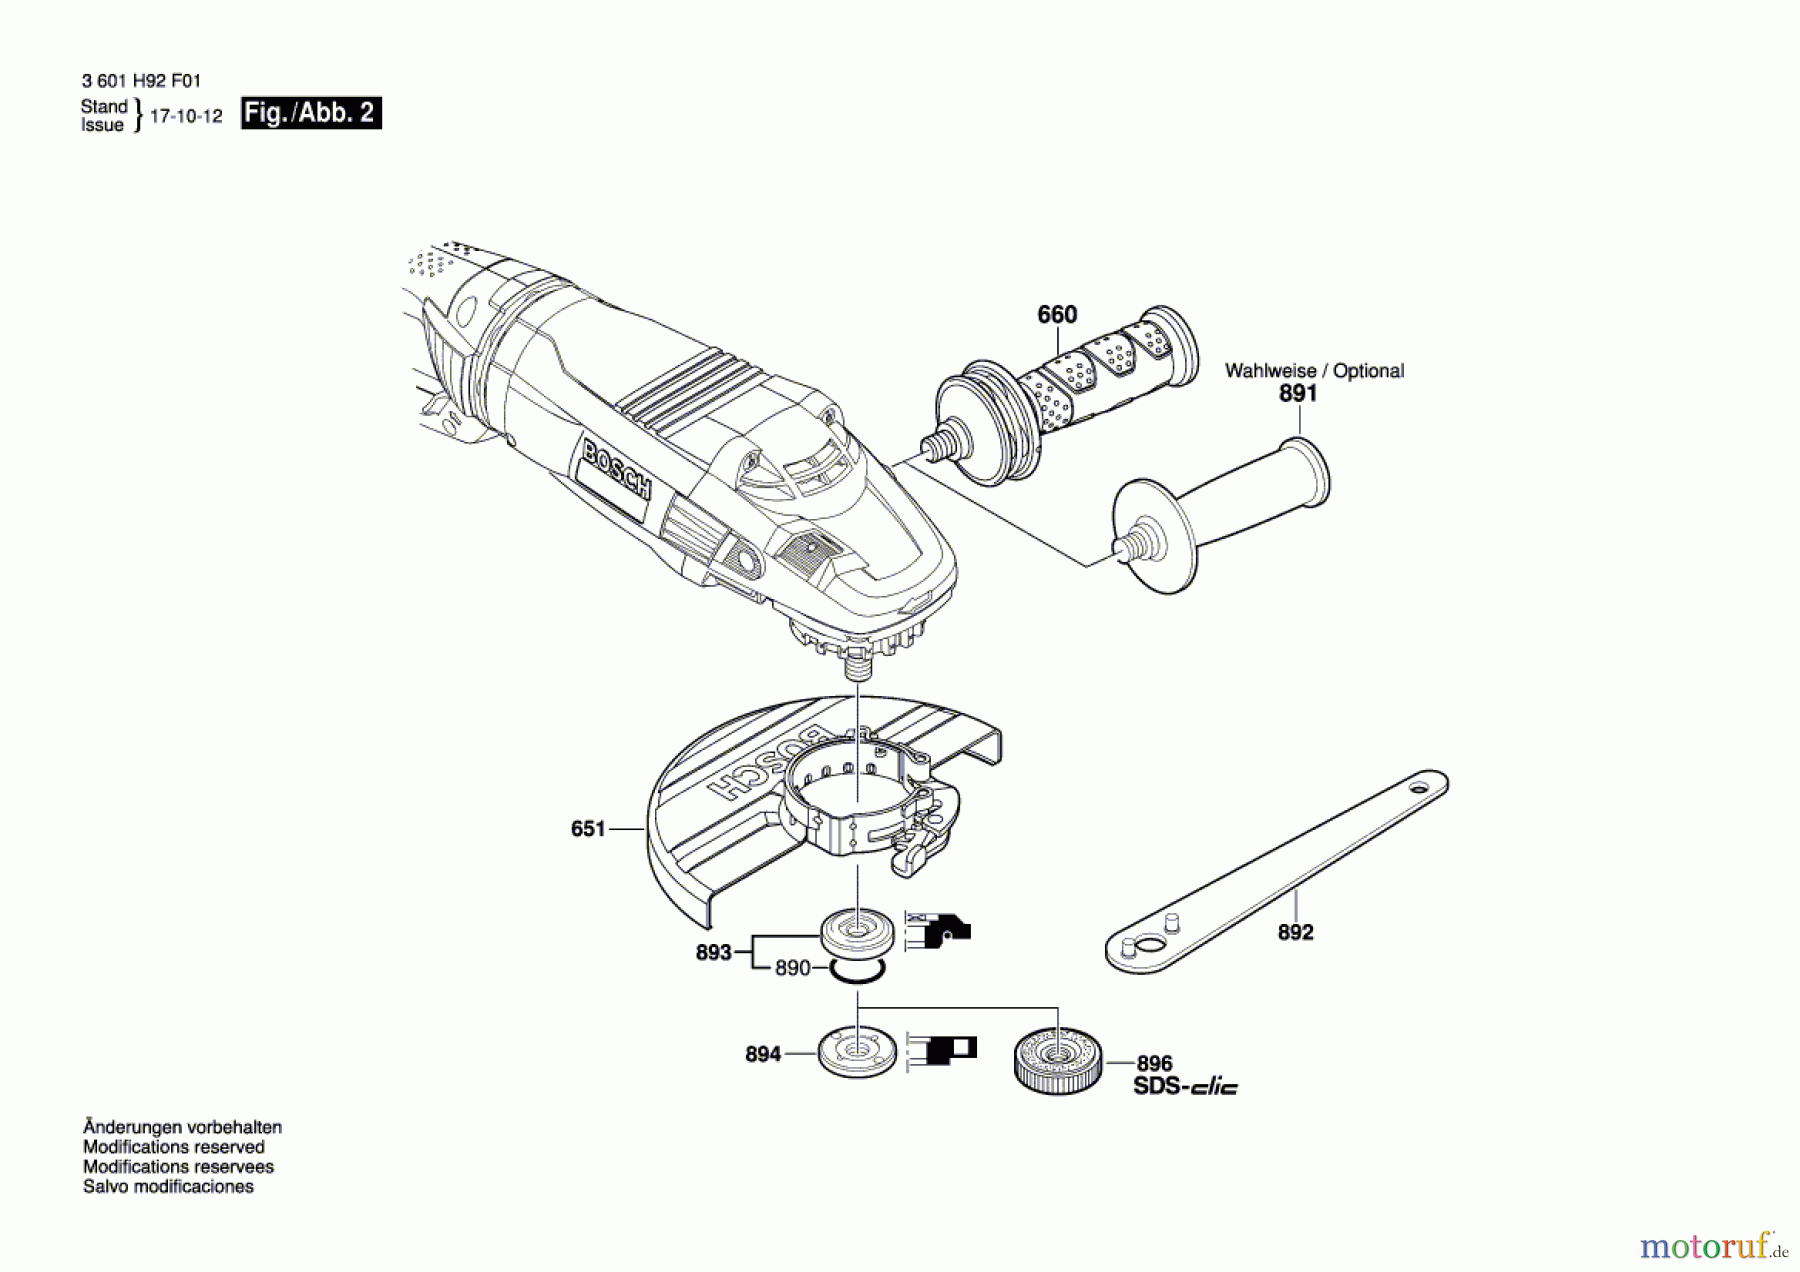  Bosch Werkzeug Winkelschleifer GWS 24-180 LVI Seite 2